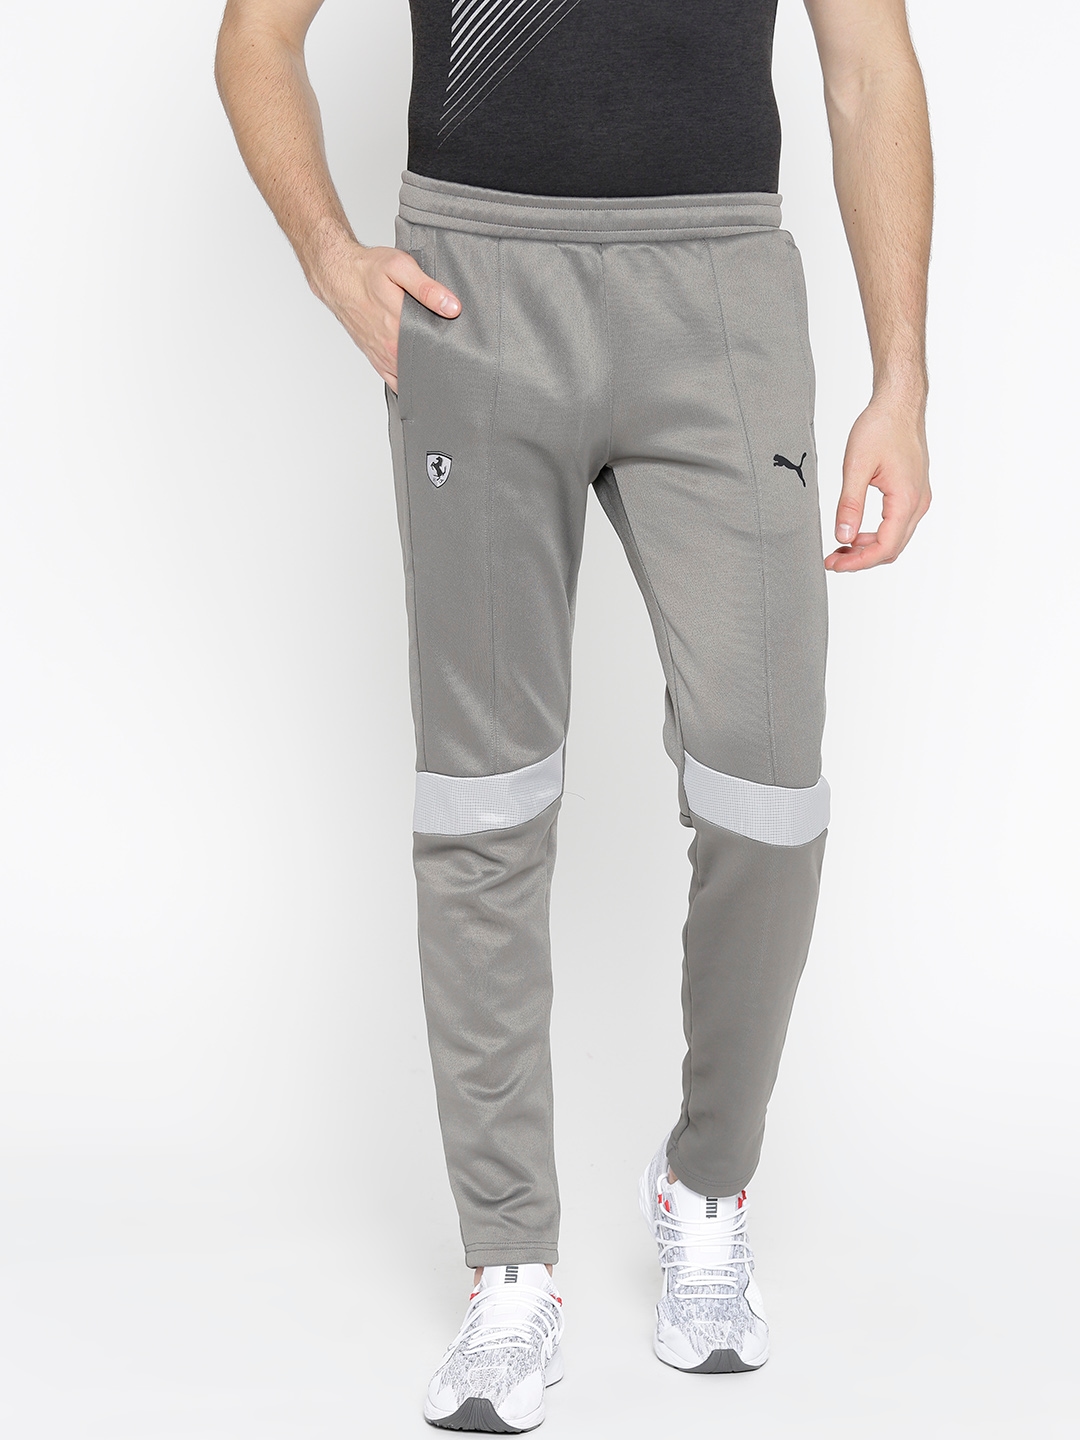 puma t7 track pants grey